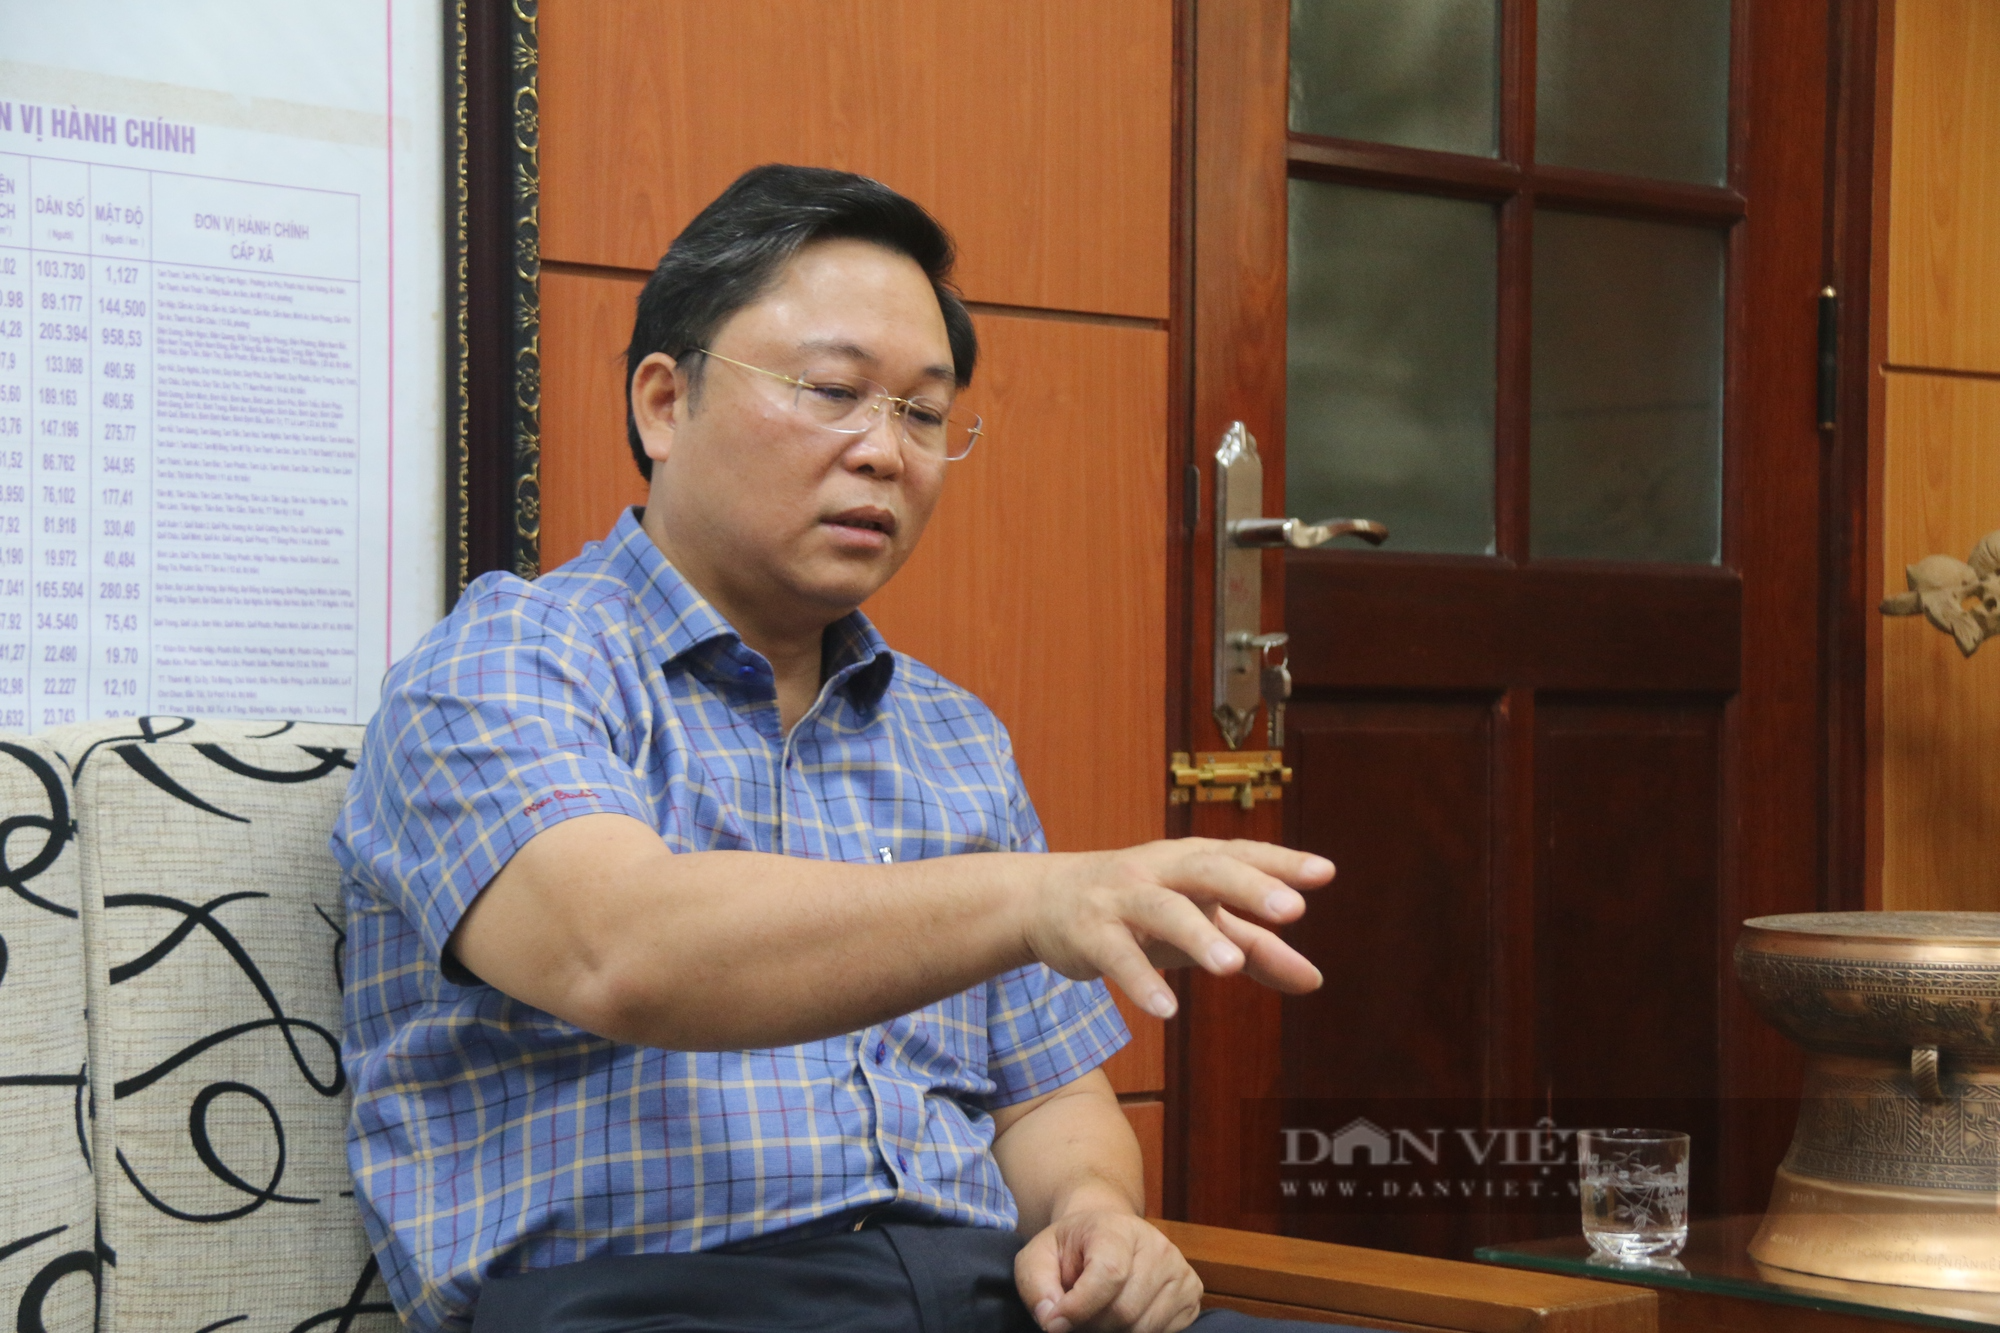 Chủ tịch Quảng Nam yêu cầu sớm số hóa hồ sơ, kinh tế số, xã hội số để phục vụ cho người dân - Ảnh 1.